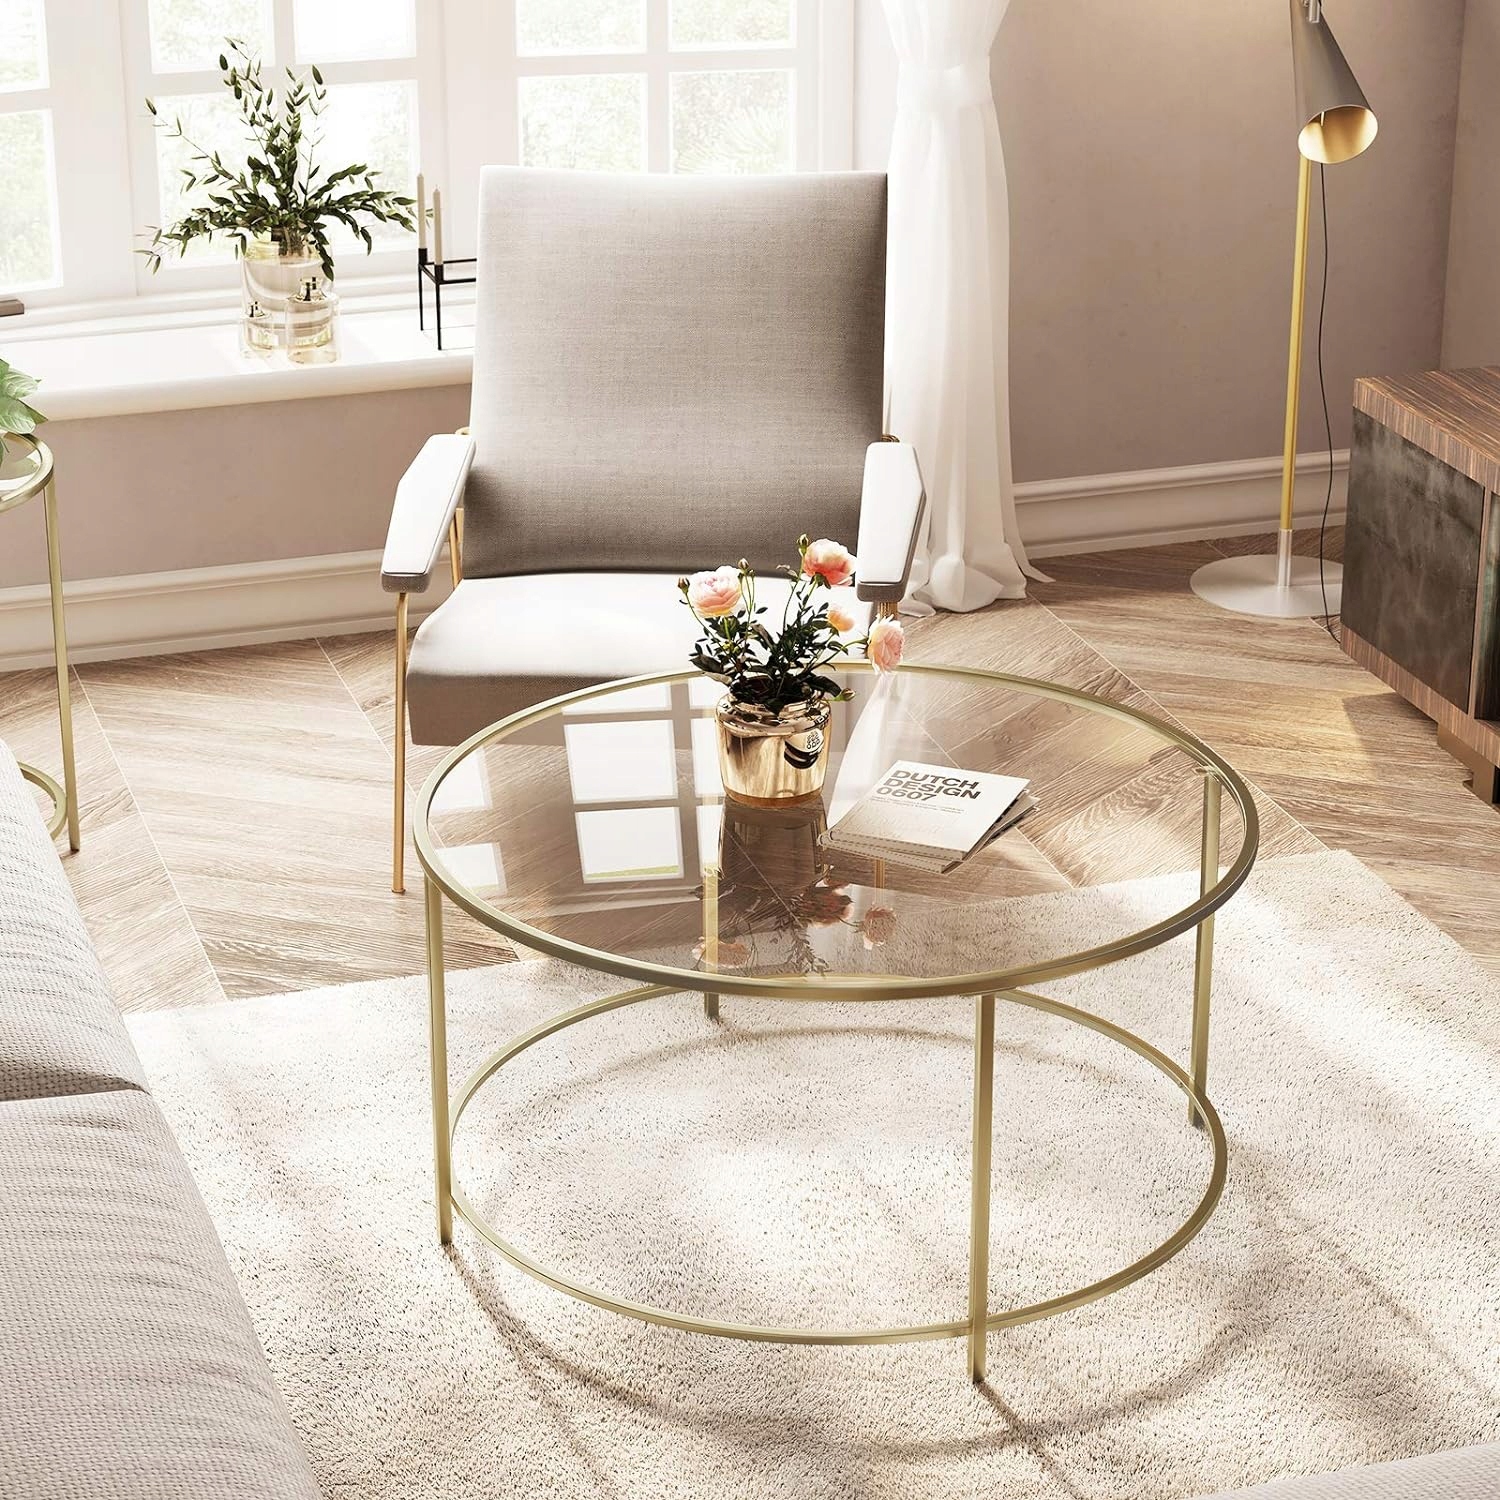 Круглий скляний журнальний столик з металевим каркасом, загартоване скло, золото, діаметр 84 см. Ширина меблів 84 см.